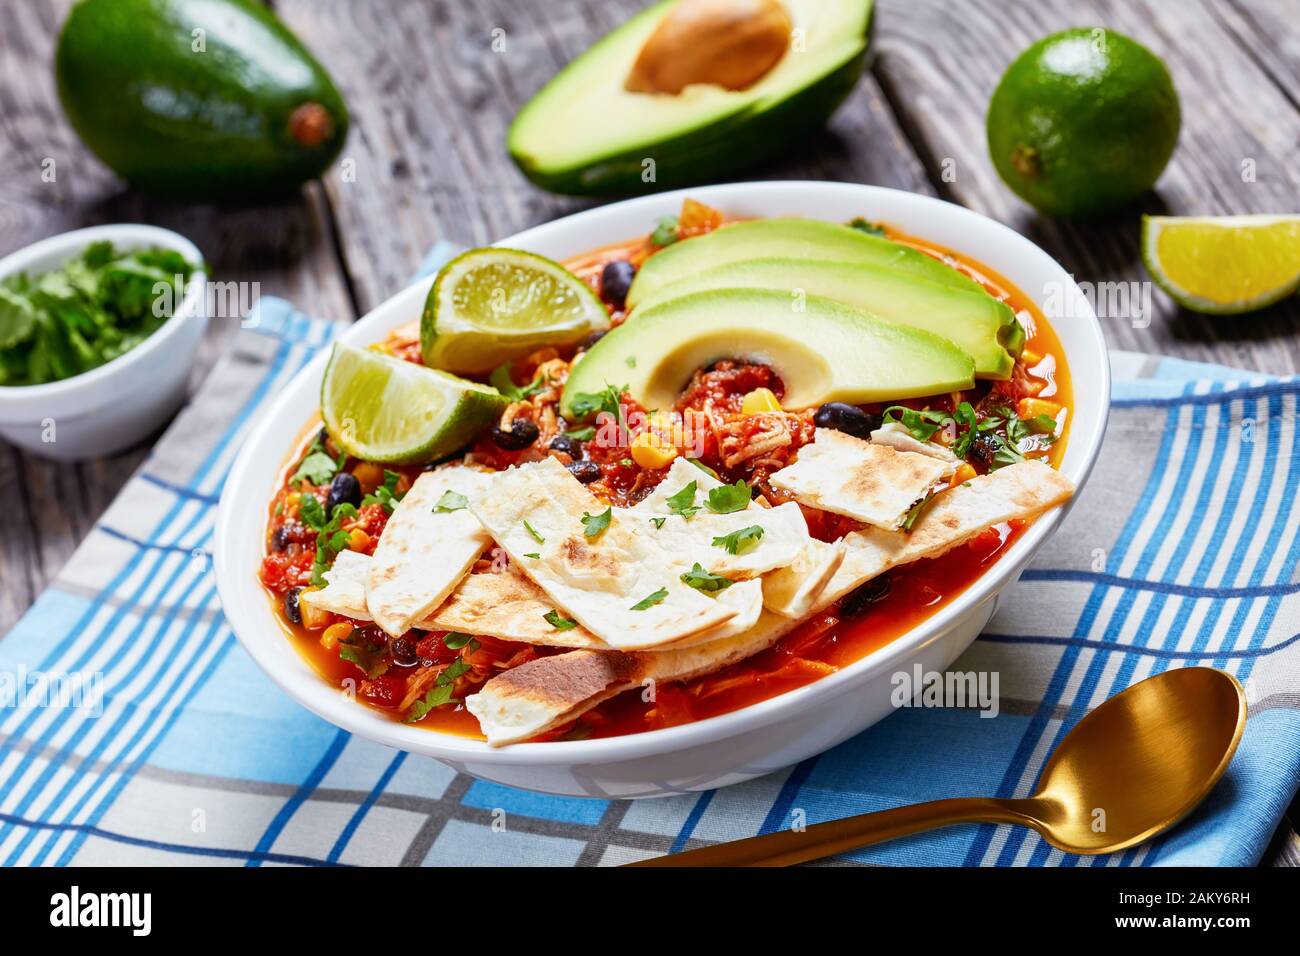 Nahaufnahme der mexikanischen zerkleinerten Chicken Taco-Suppe mit schwarzer Bohne, Maiskörnchen, mit Tortillastreifen, Avocado-Scheiben und Kalk in weißer Schüssel auf einem Stockfoto